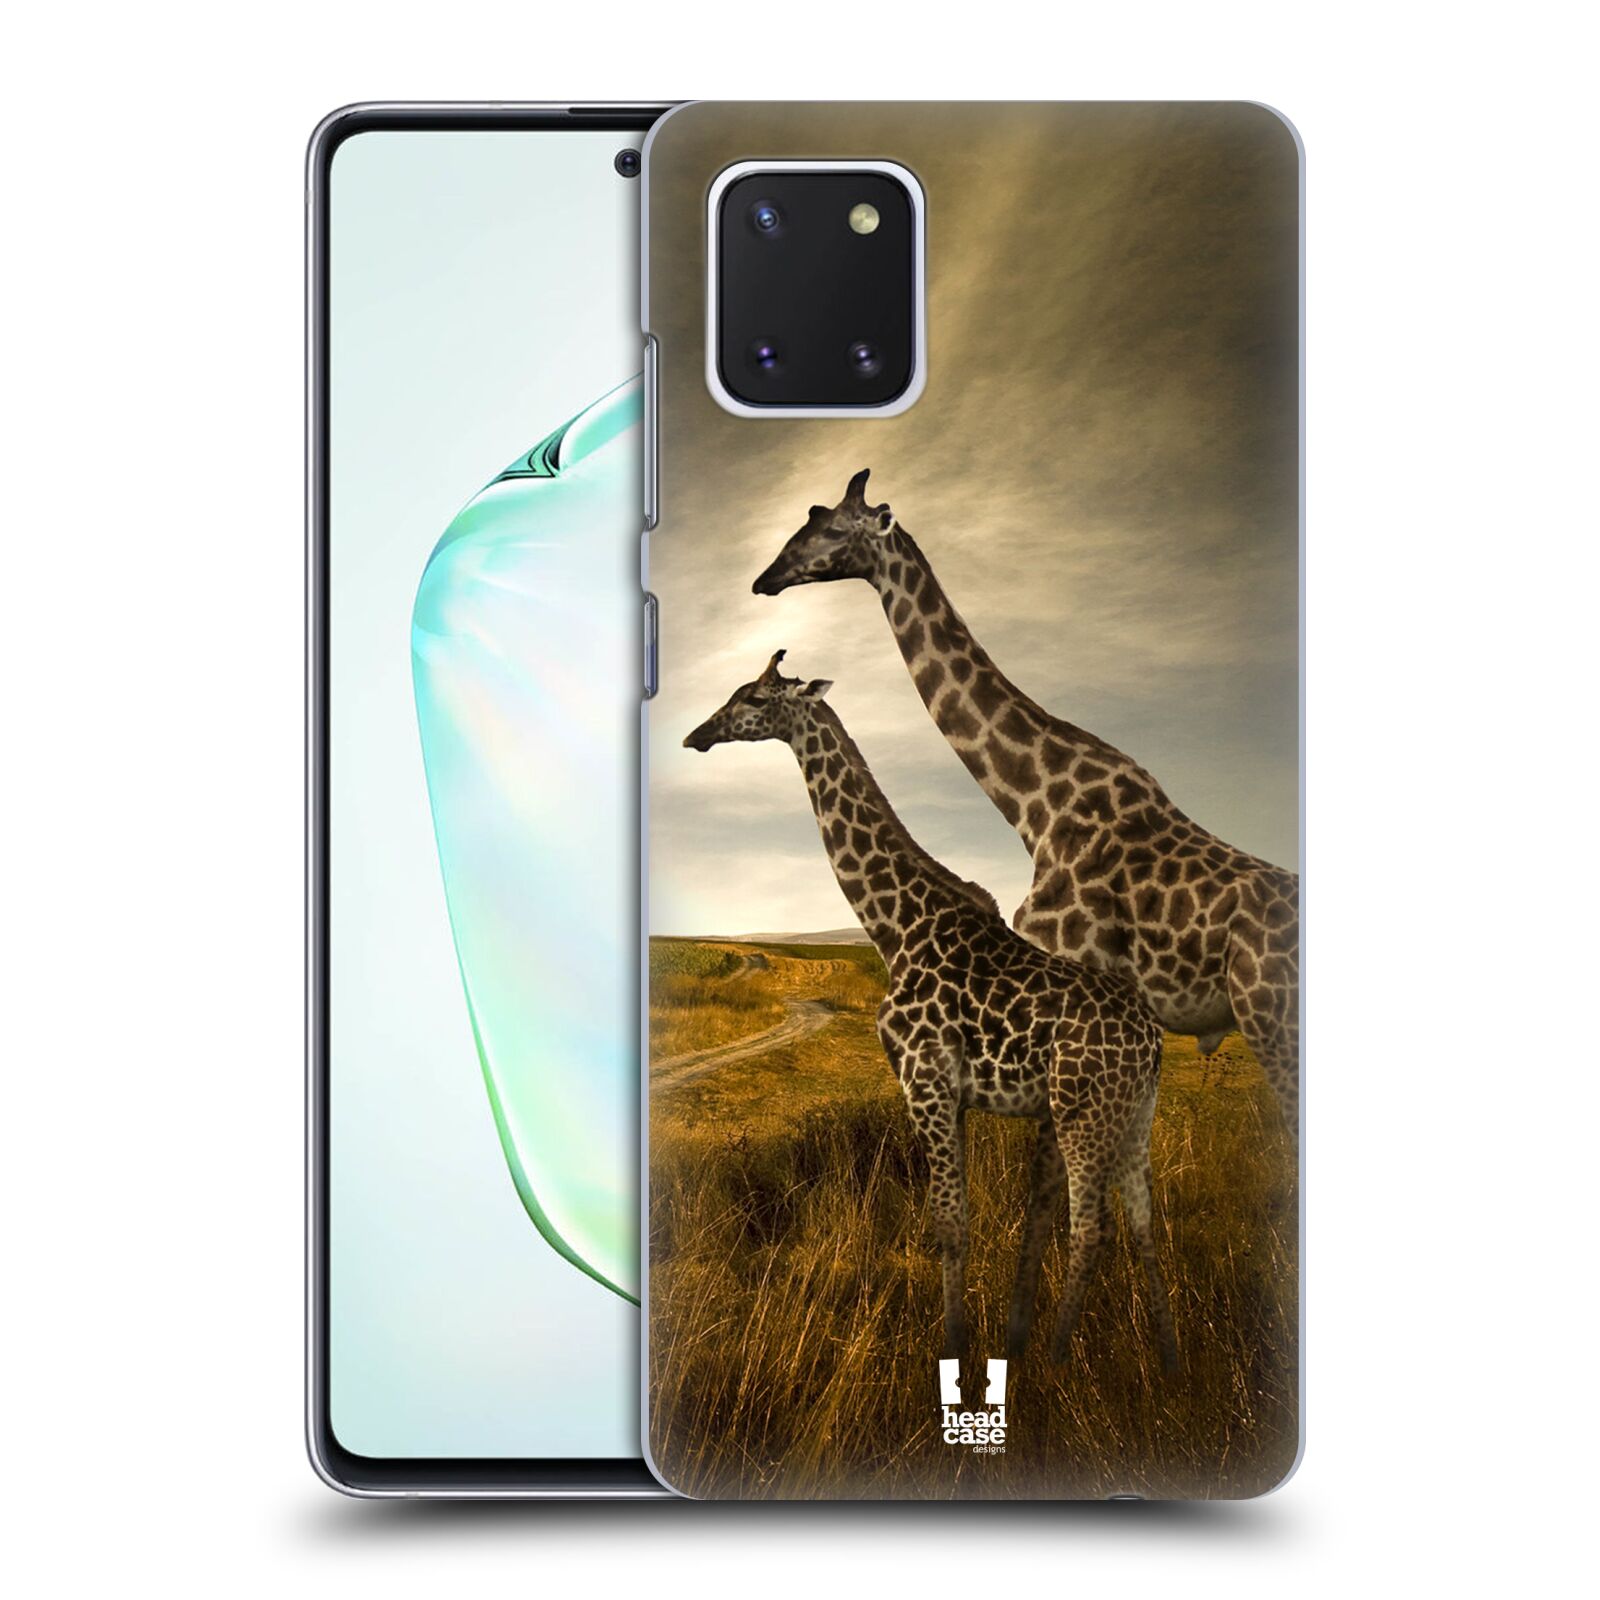 Zadní obal pro mobil Samsung Galaxy Note 10 Lite - HEAD CASE - Svět zvířat žirafy